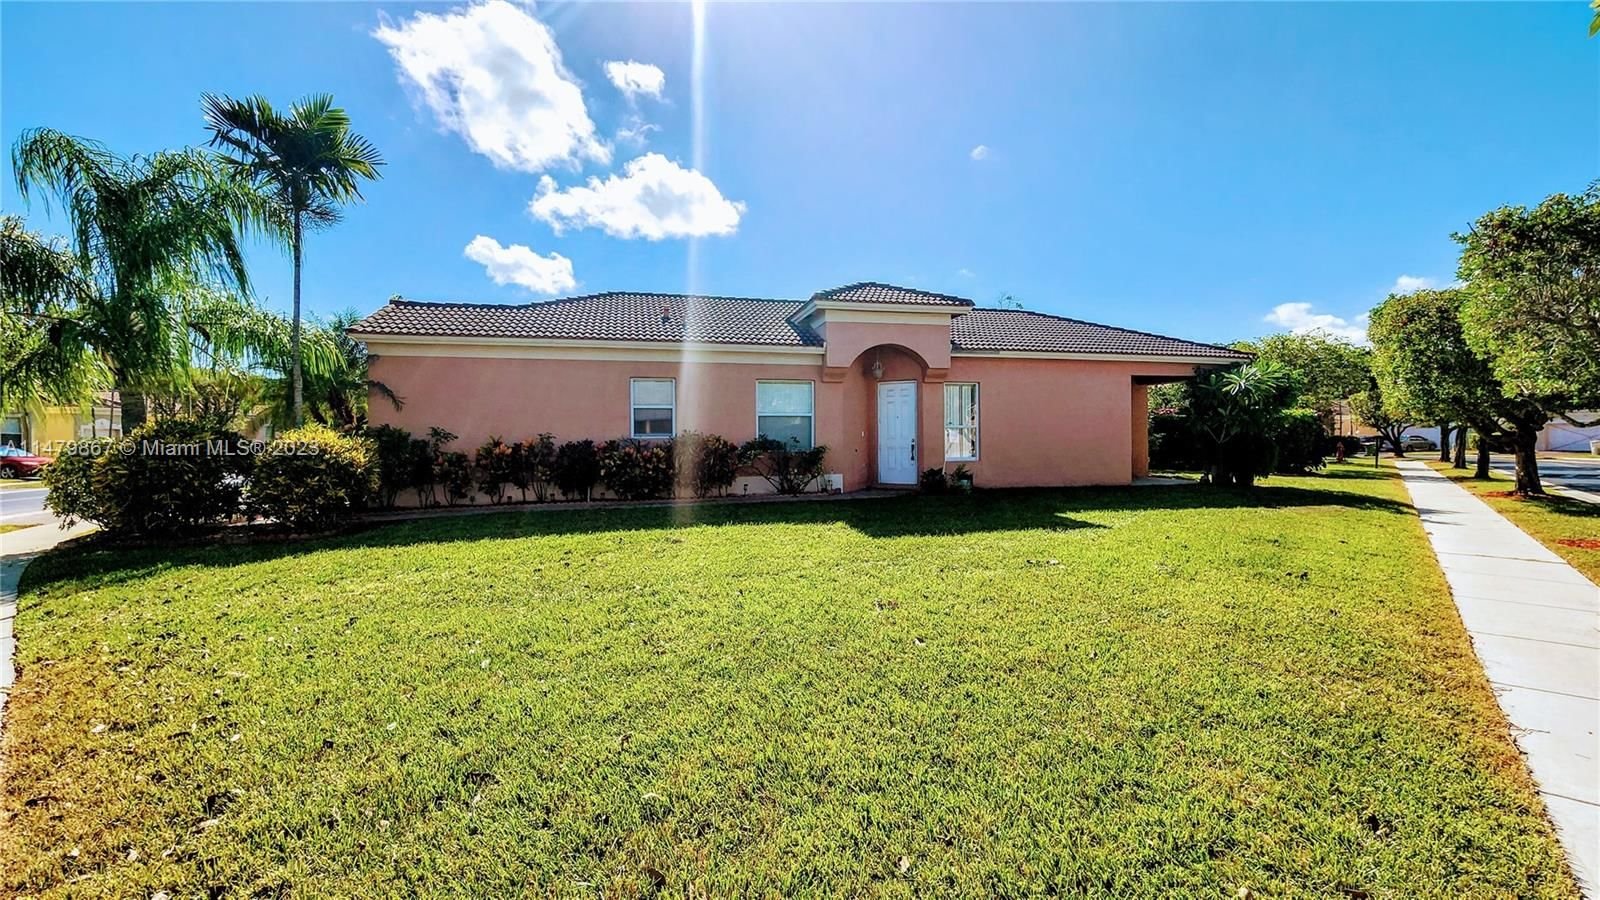 Real estate property located at 2326 37th Rd, Miami-Dade County, PORTOFINO BAY, Homestead, FL